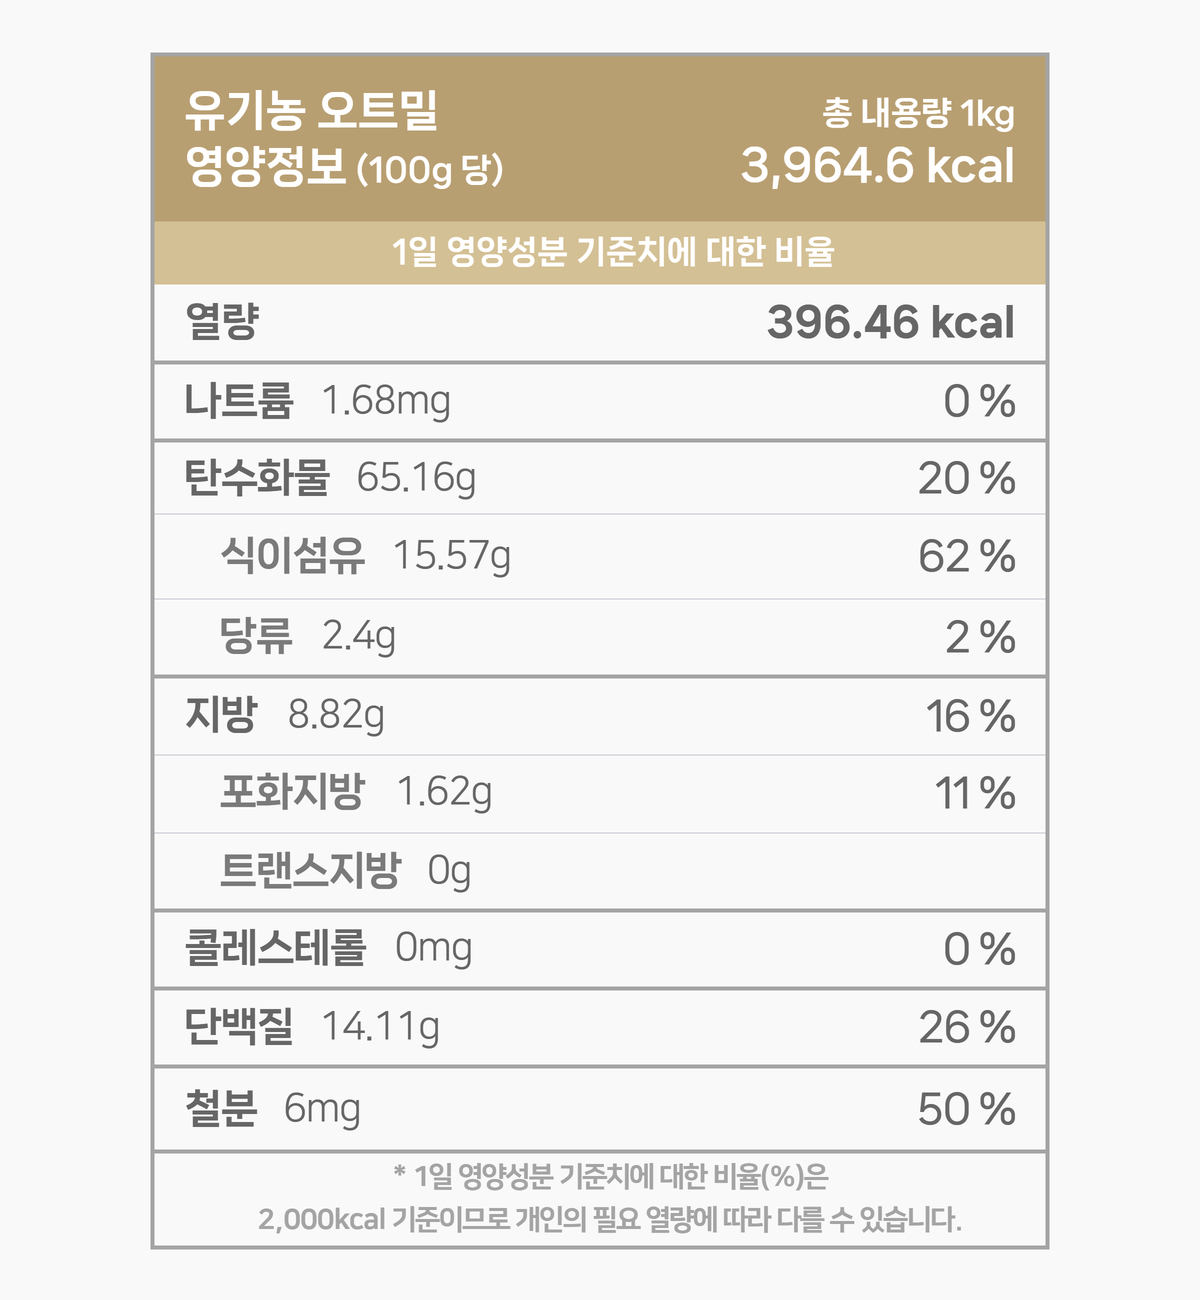 영양성분 표입니다. 한 봉 100g 기준 396.46칼로리입니다. 다음은 칼로리를 제외한 다른 영양성분 입니다. 칼로리 외 영양성분은 1일 영양성분 기준치에 대한 비율도 퍼센트로 표기되어 있습니다. 그 목록입니다. 나트륨 1.68mg 0%, 탄수화물 65.16g 20%, 당류 2.40g 2%, 지방 8.82g 16%, 트랜스지방 0.00g 0%, 포화지방 1.62g 11%, 콜레스테롤 0.00mg 0%, 단백질 14.11g 27%. 1일 영양성분 기준치에 대한 비율(퍼센트)는 2000칼로리 기준이므로 개인의 필요한 열량에 따라 다를 수 있습니다. 